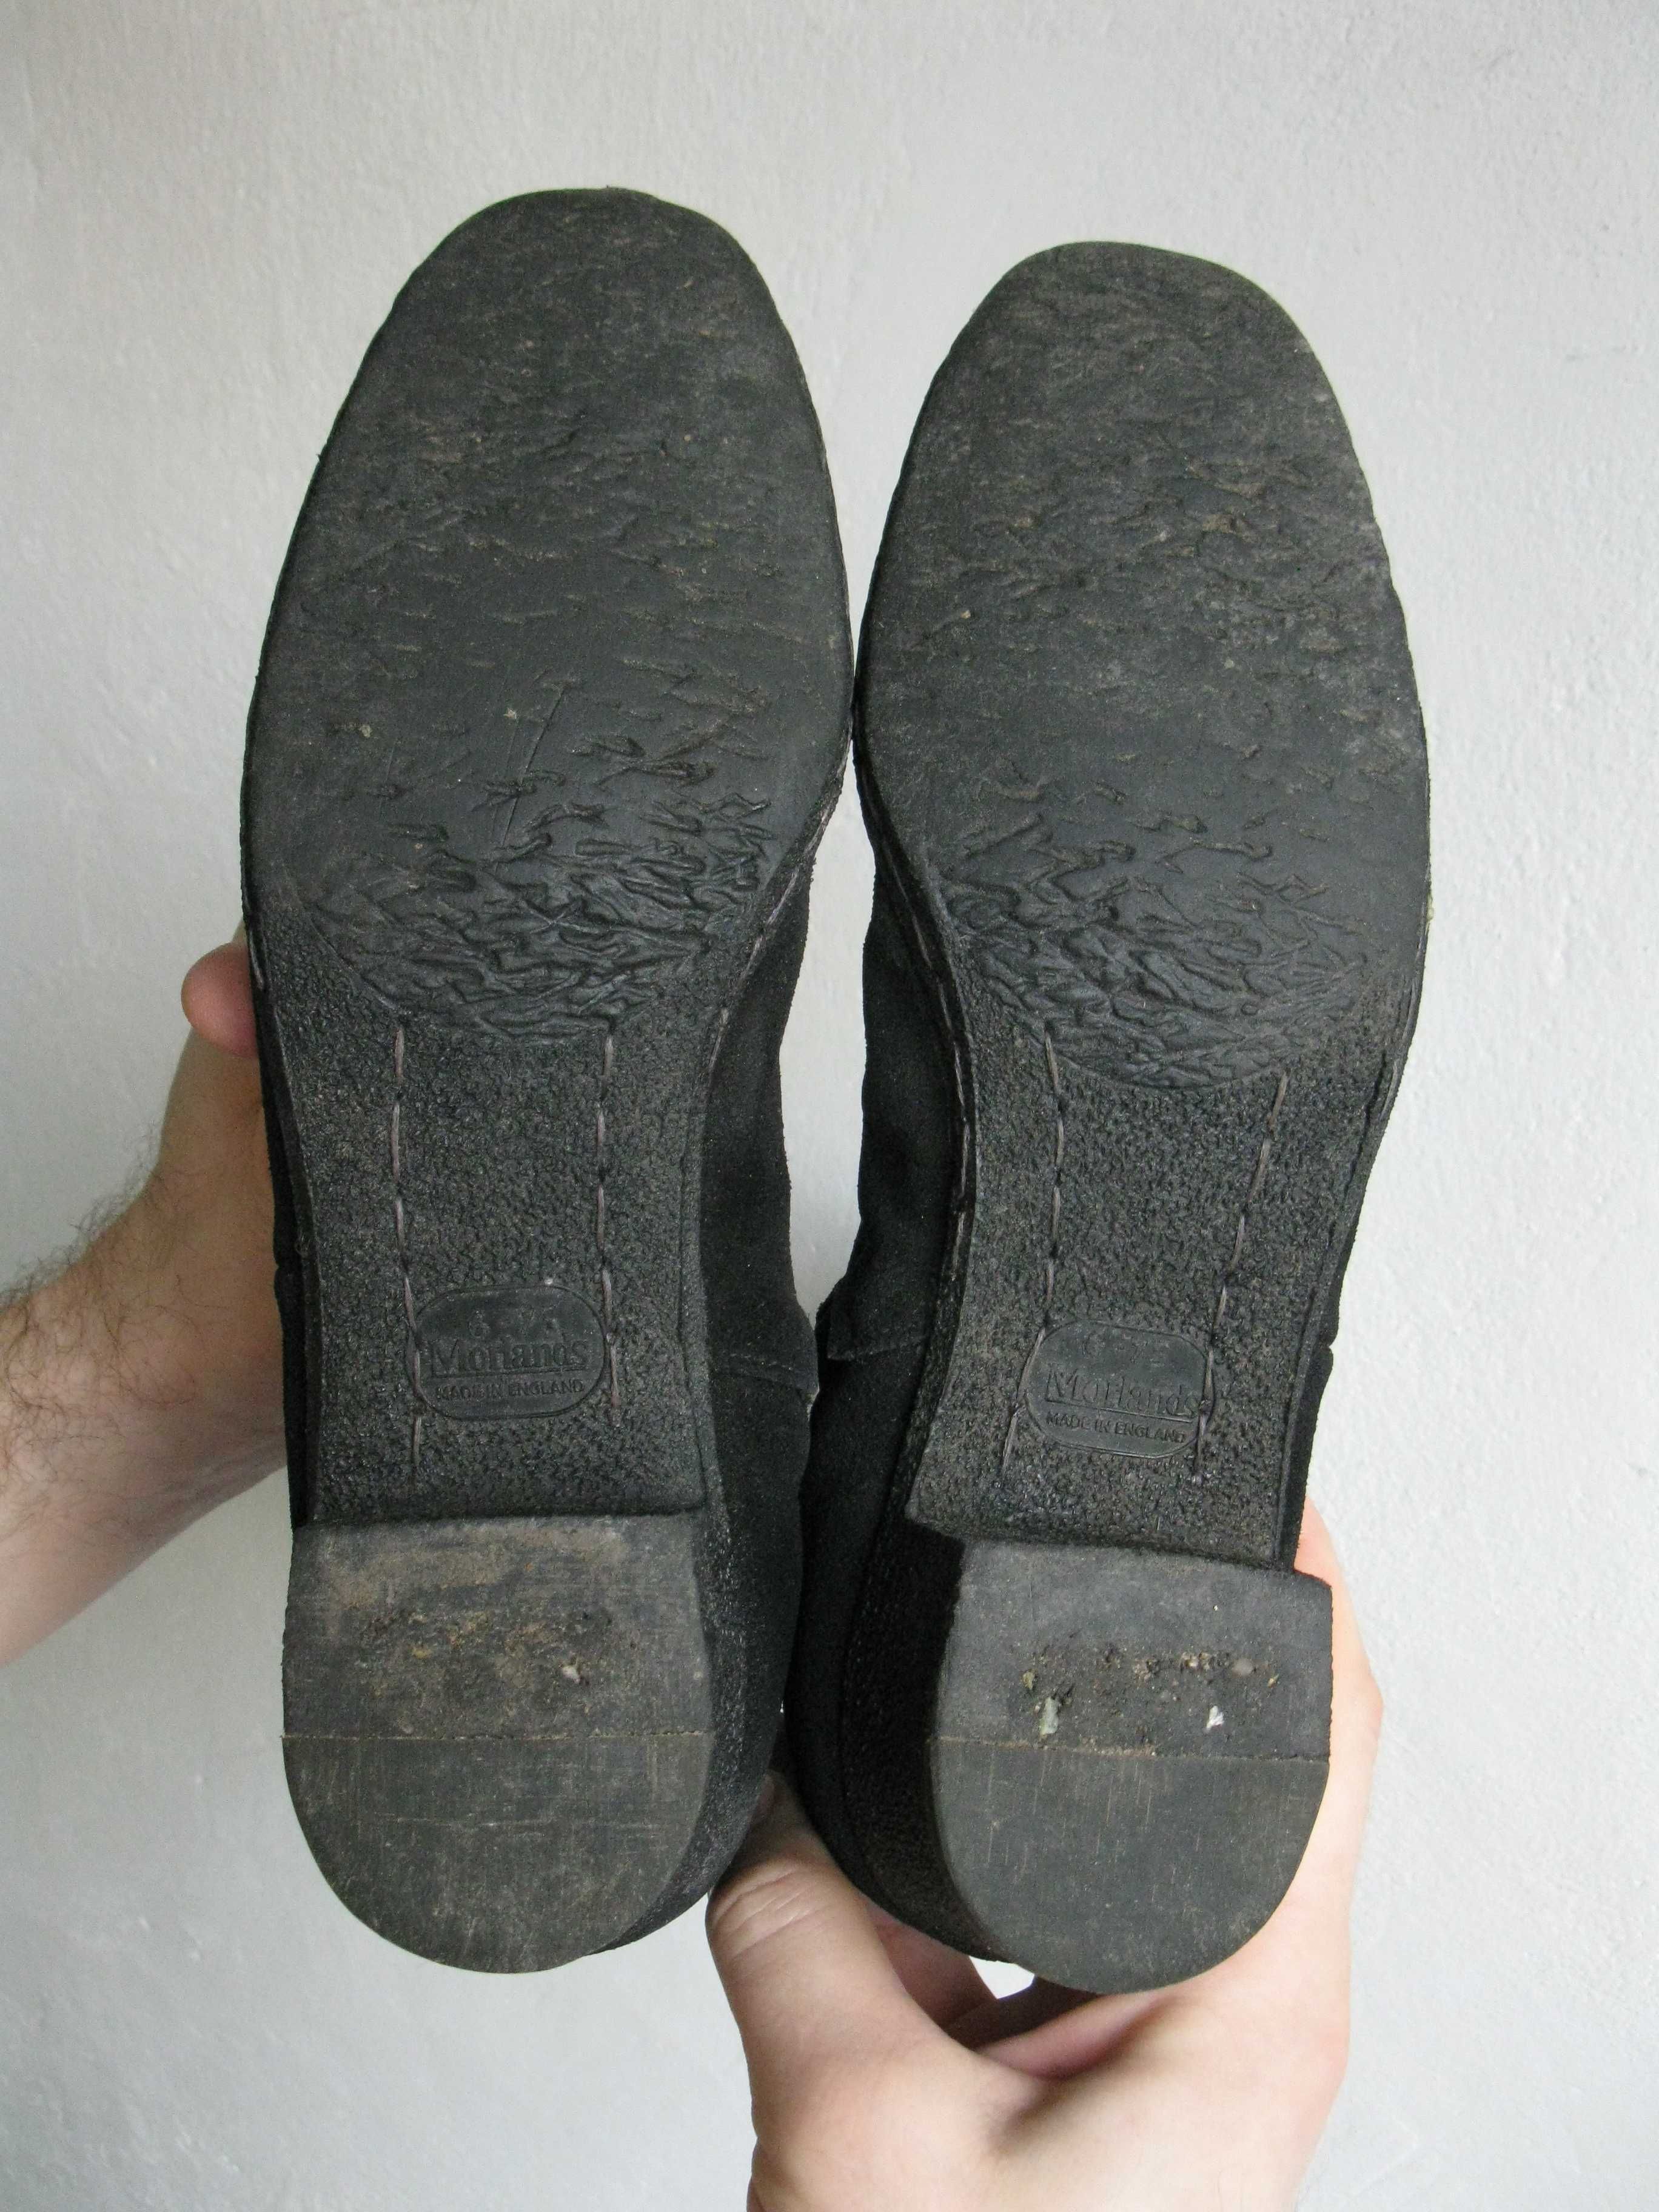 Английские зимние сапоги, ботинки Morlands дорогой бренд.